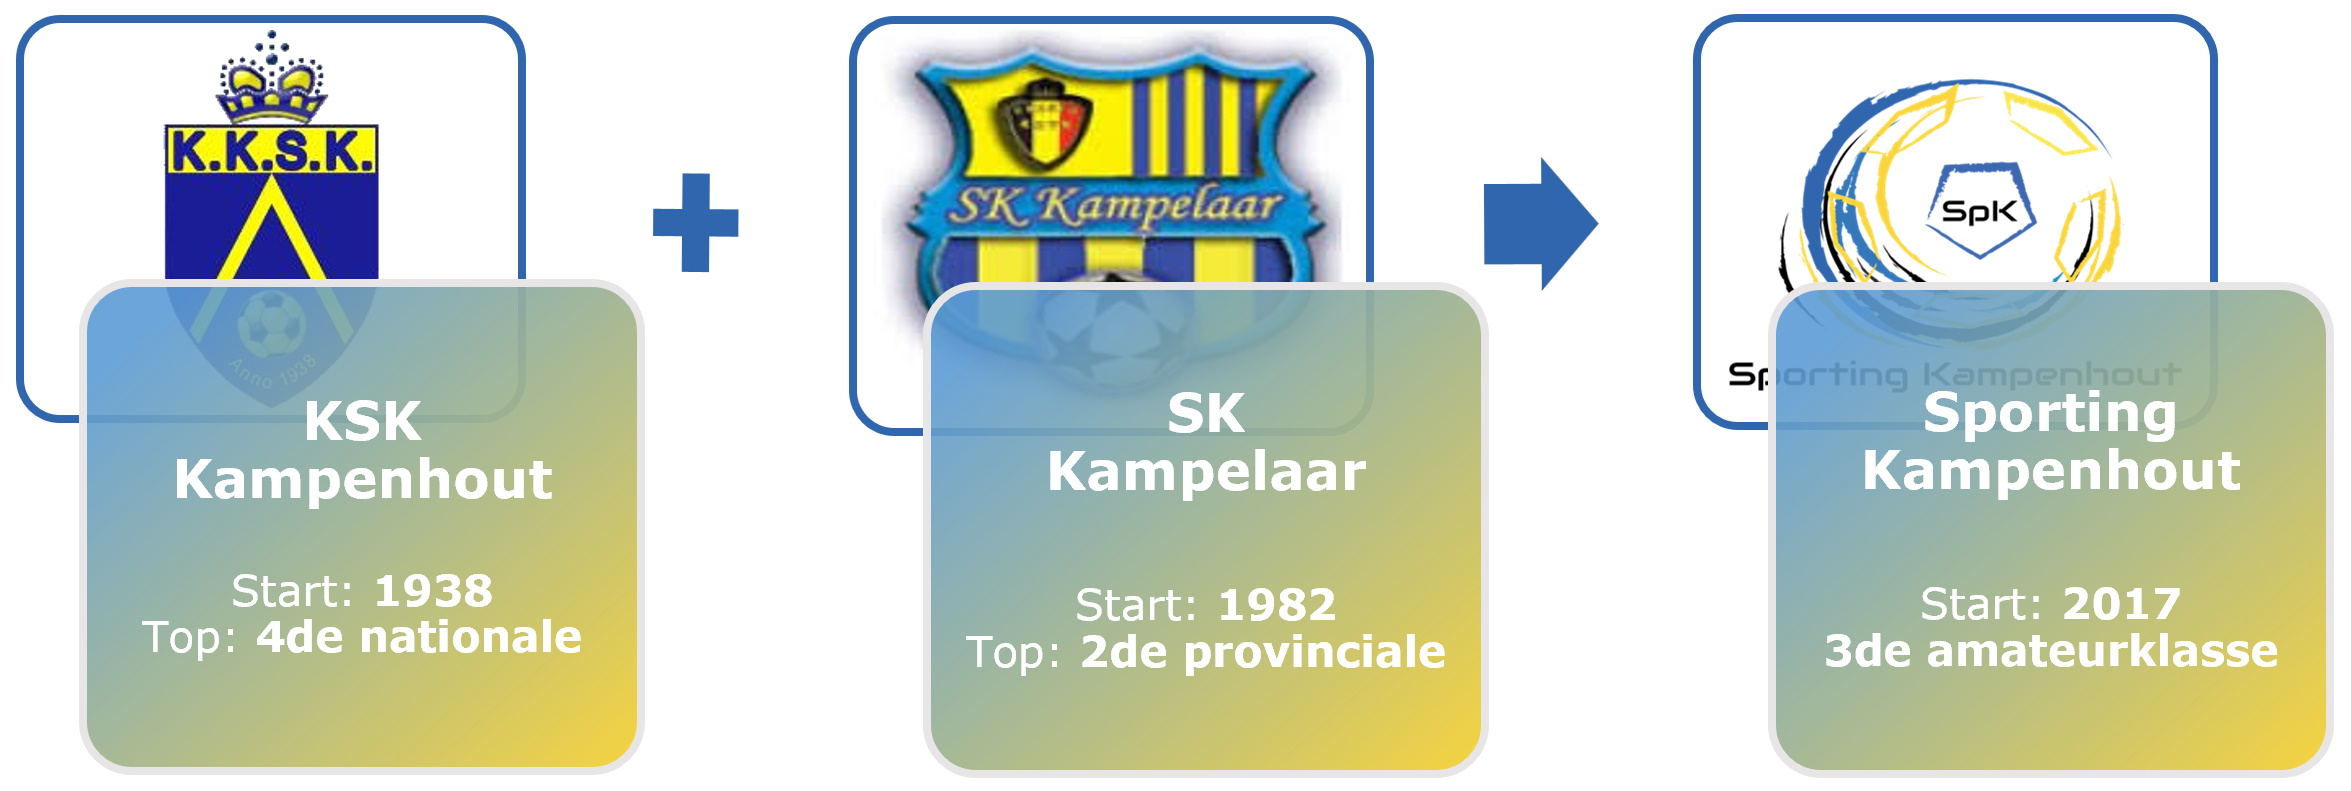 KSK Kampenhout + SK Kampelaar = Sporting Kampenhout